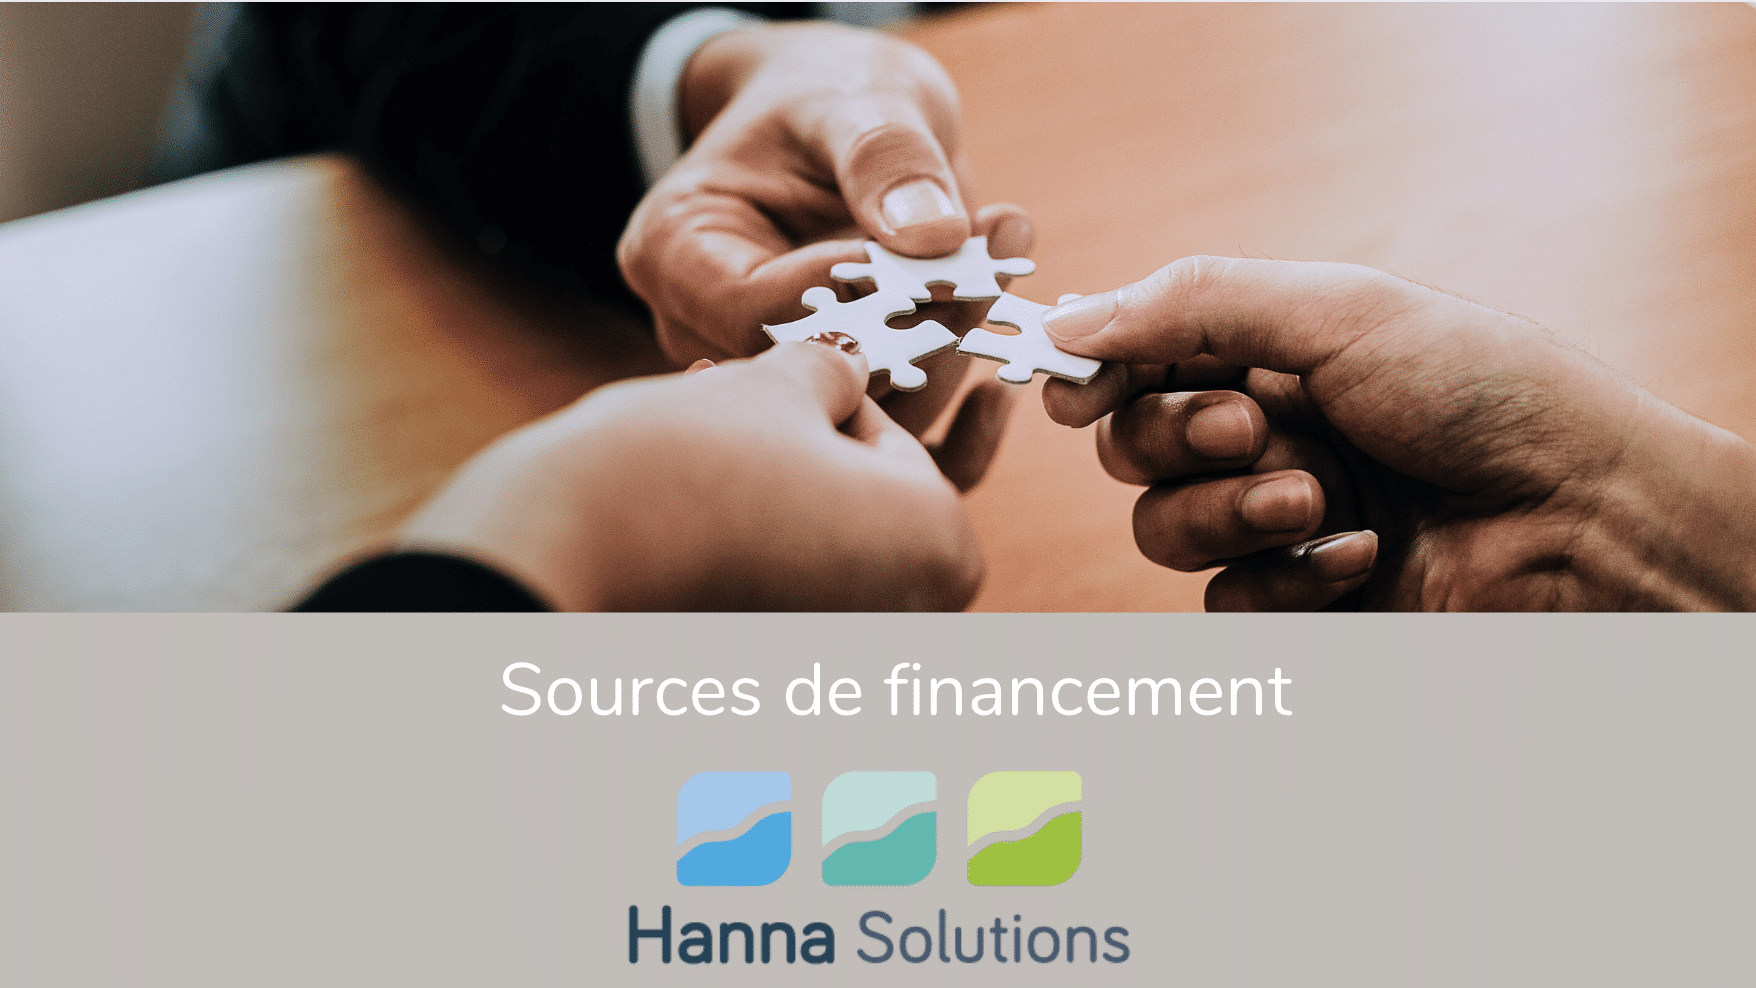 Sources de financement HannaH